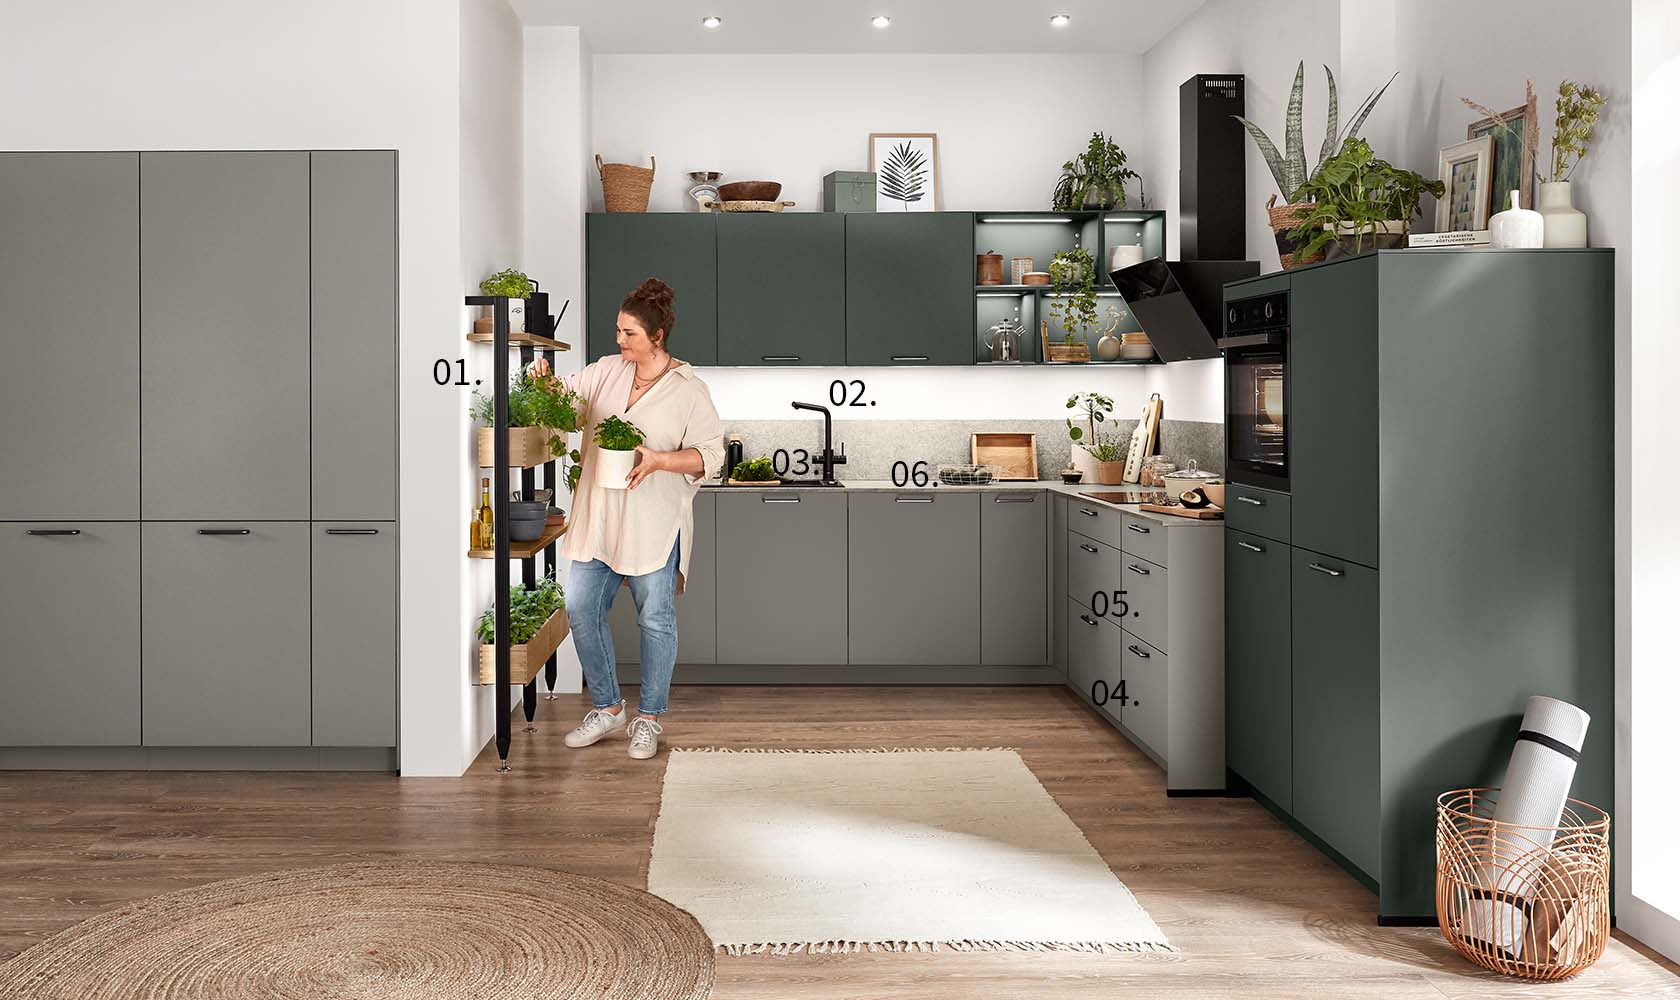 Kobieta stoi w nowoczesnej kuchni z numerowanymi wskaźnikami wyróżniającymi cechy takie jak szafki, sprzęty AGD i dekoracyjne rośliny.